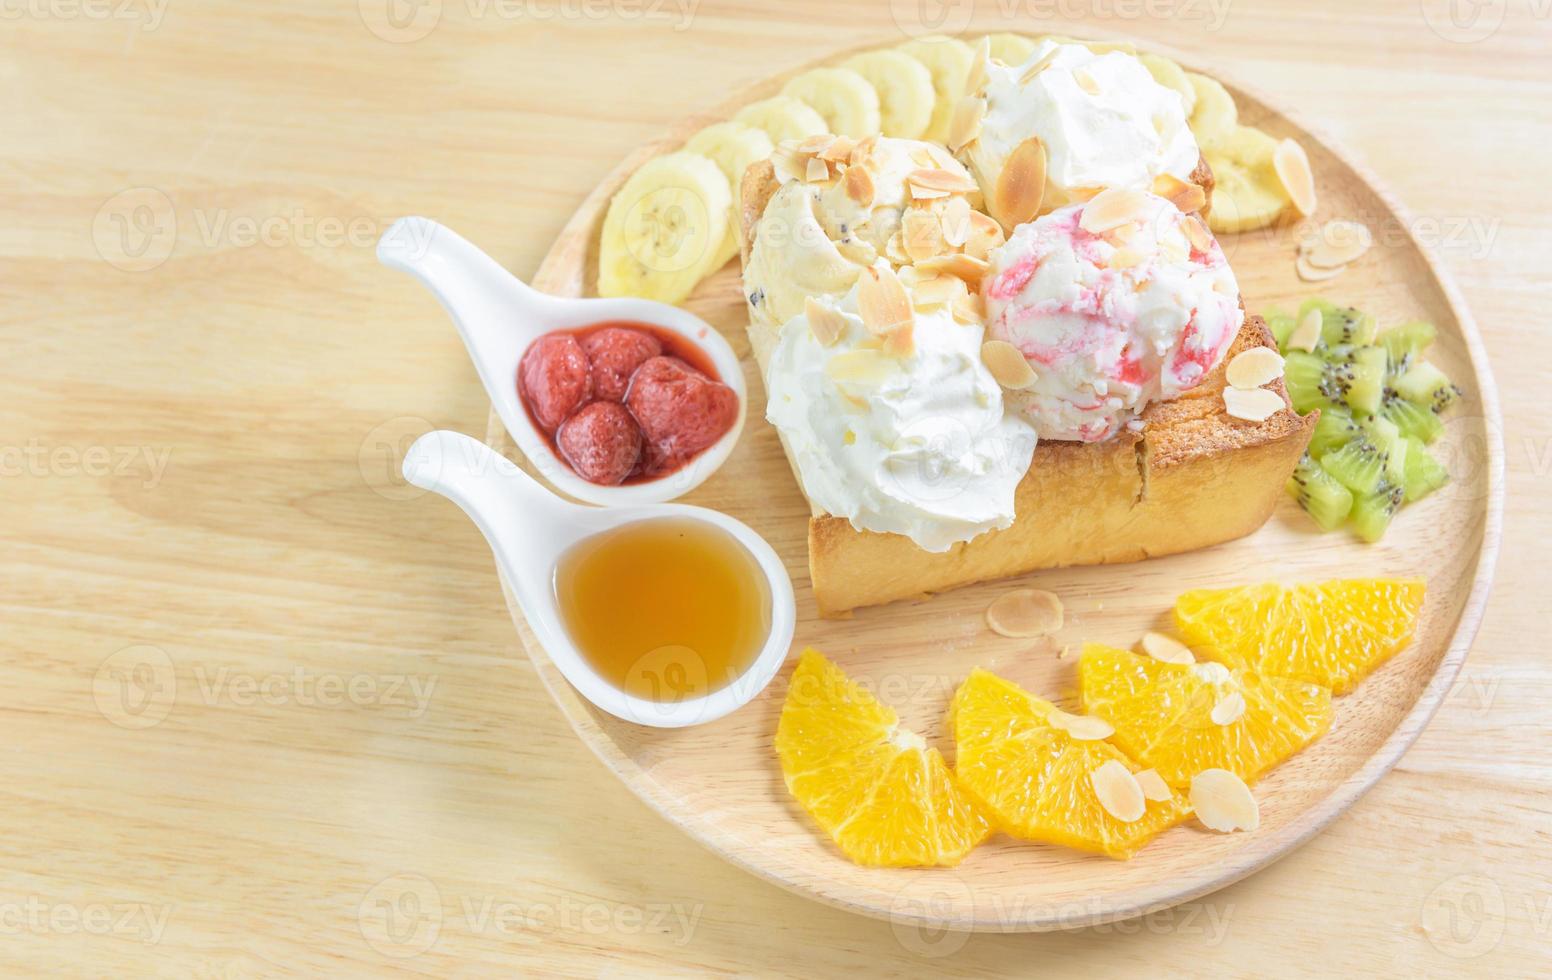 honey toast strawberry with ice cream fruit banana and orange photo